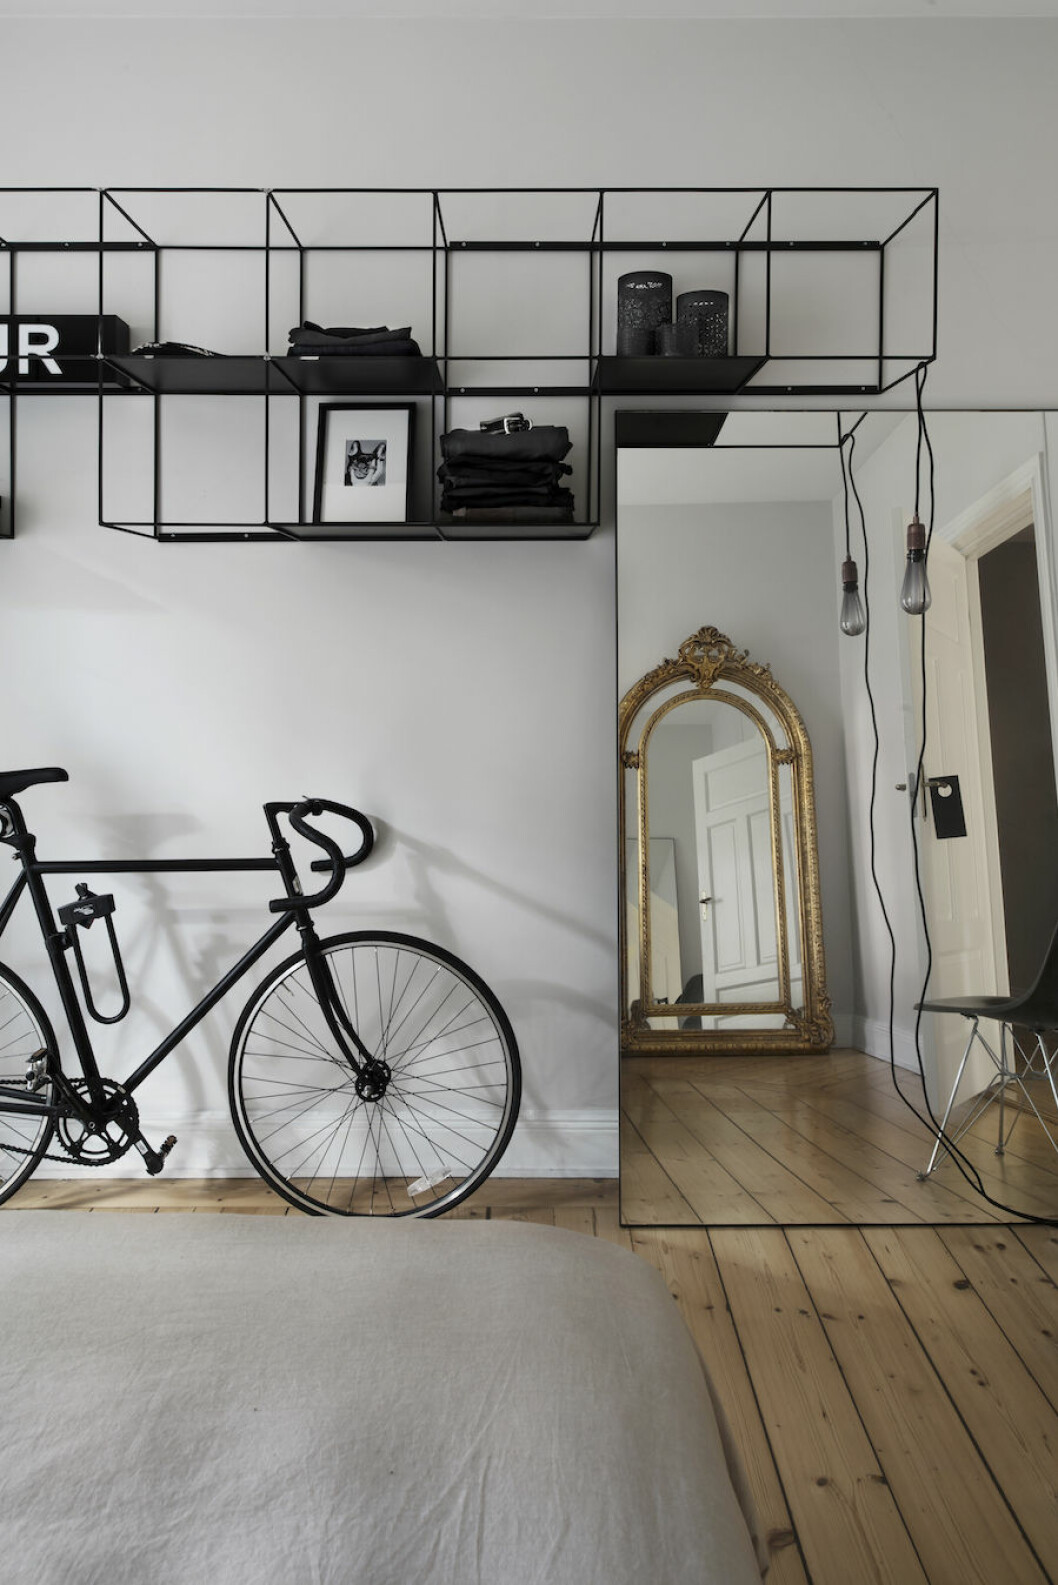 Cykel från Bikeid, guldspegel från Lauritz. Sladdlampa från Frame med led-lampa från Buster + Punch hemma hos Michelle Meadows. 